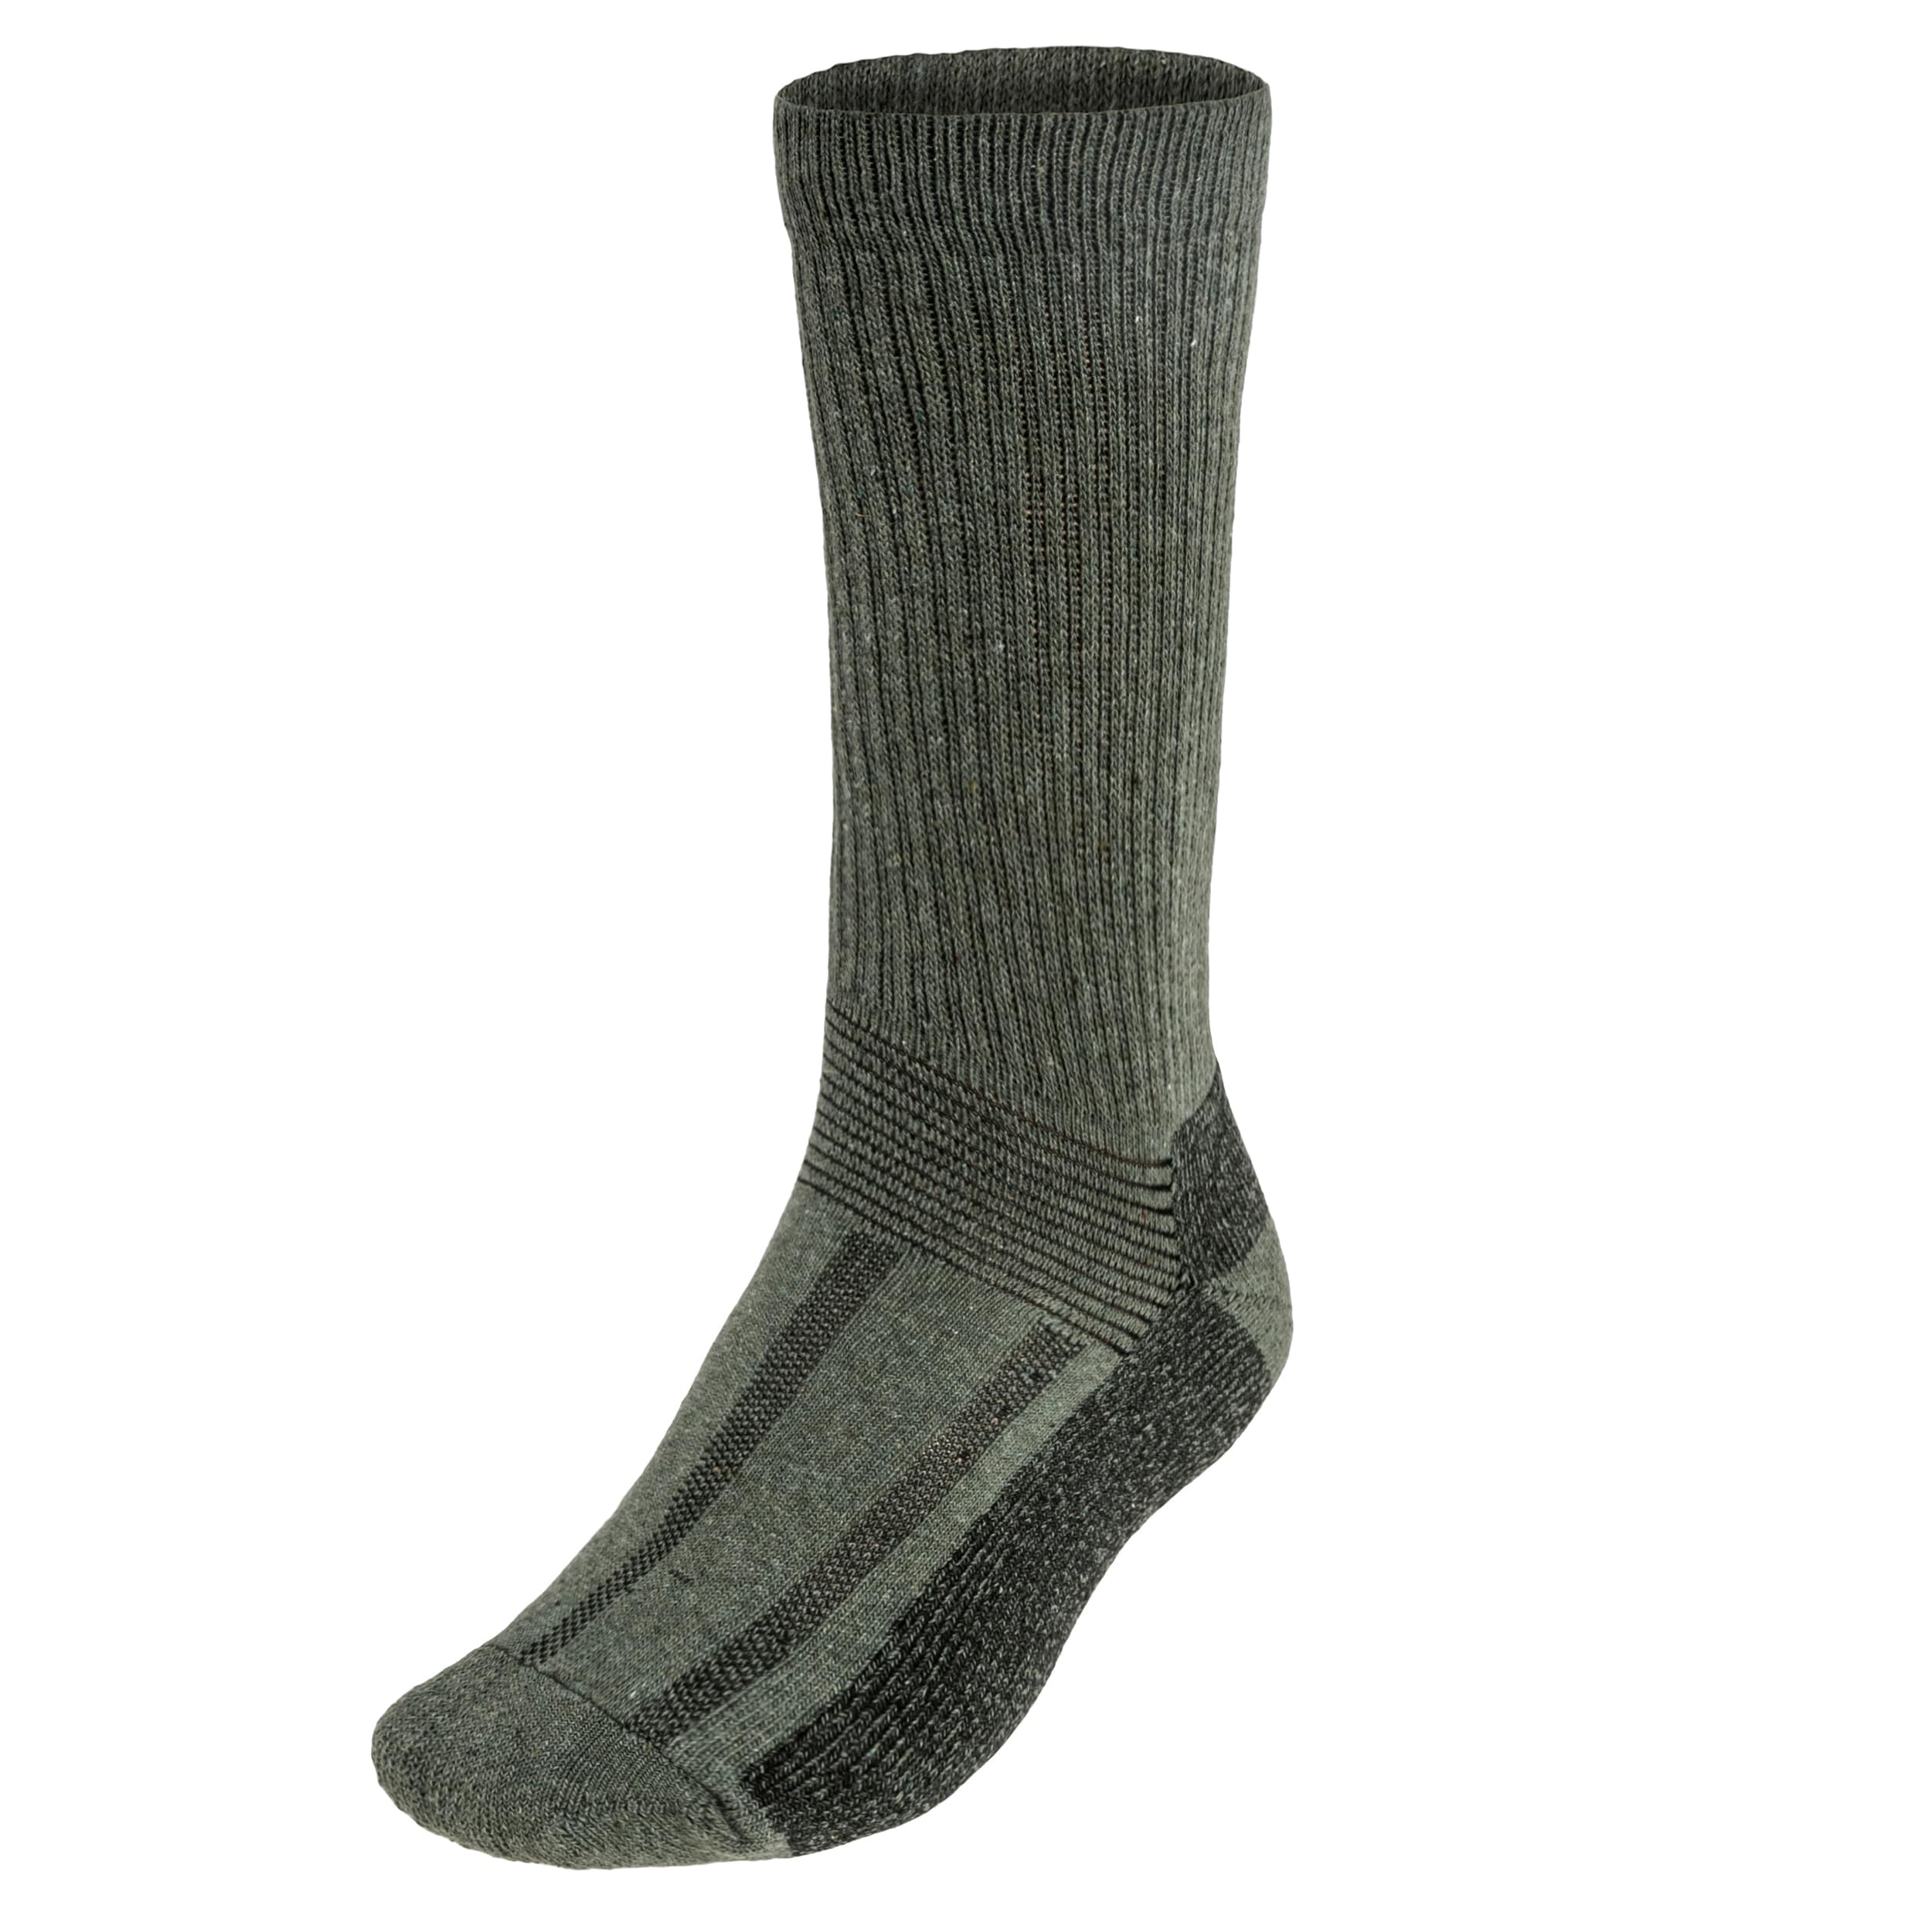 Skarpety Mil-Tec Swedish Boot Socks - Olive